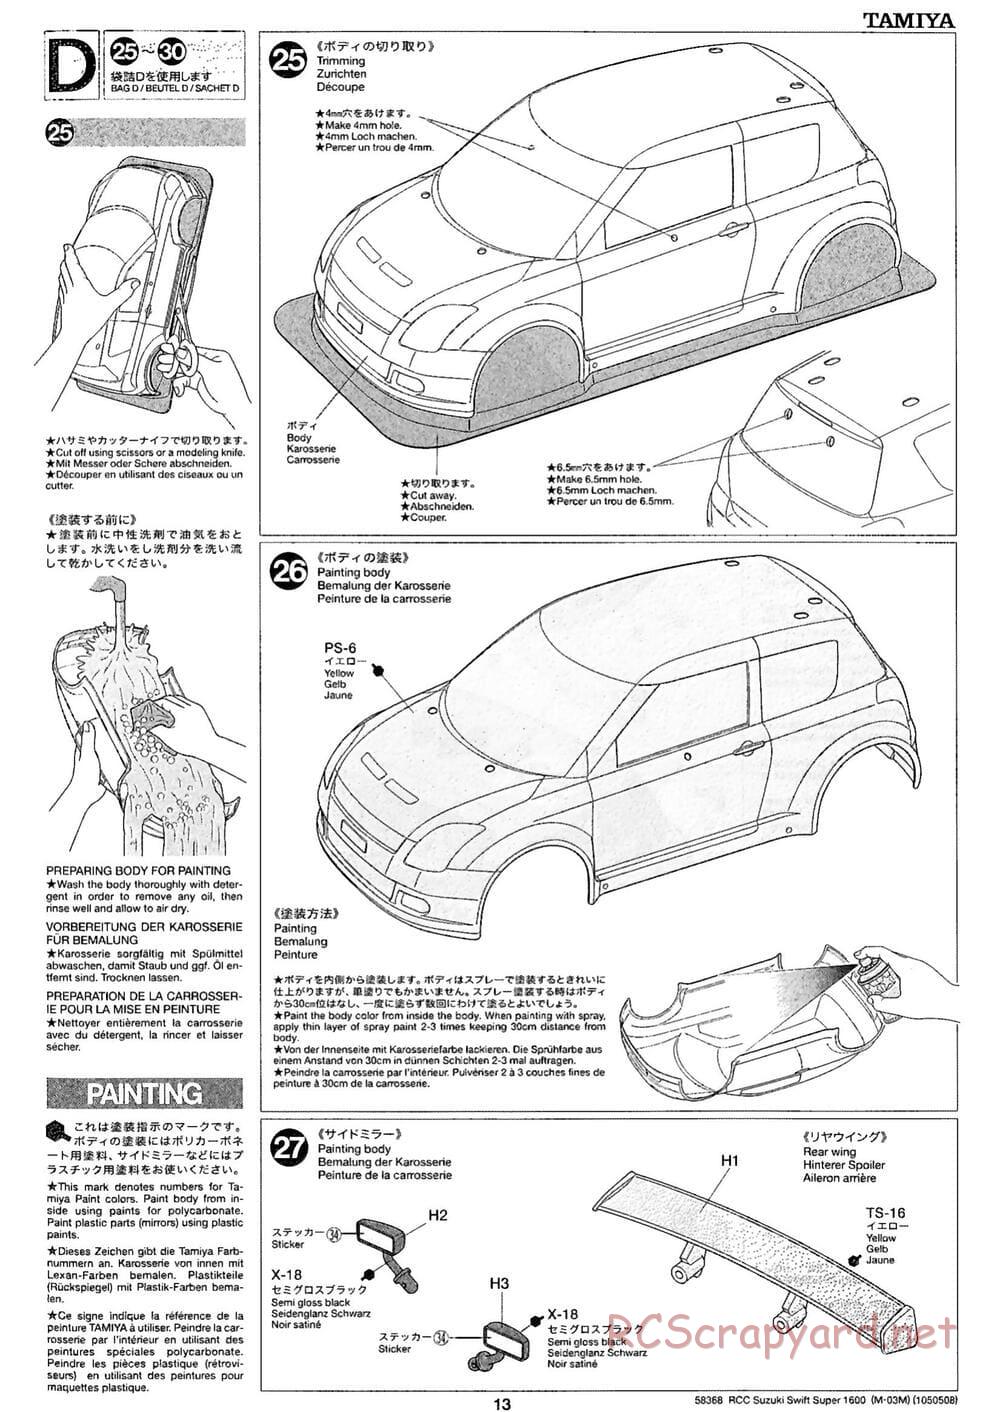 Tamiya - Suzuki Swift Super 1600 - M-05Ra Chassis - Body Info - Page 1